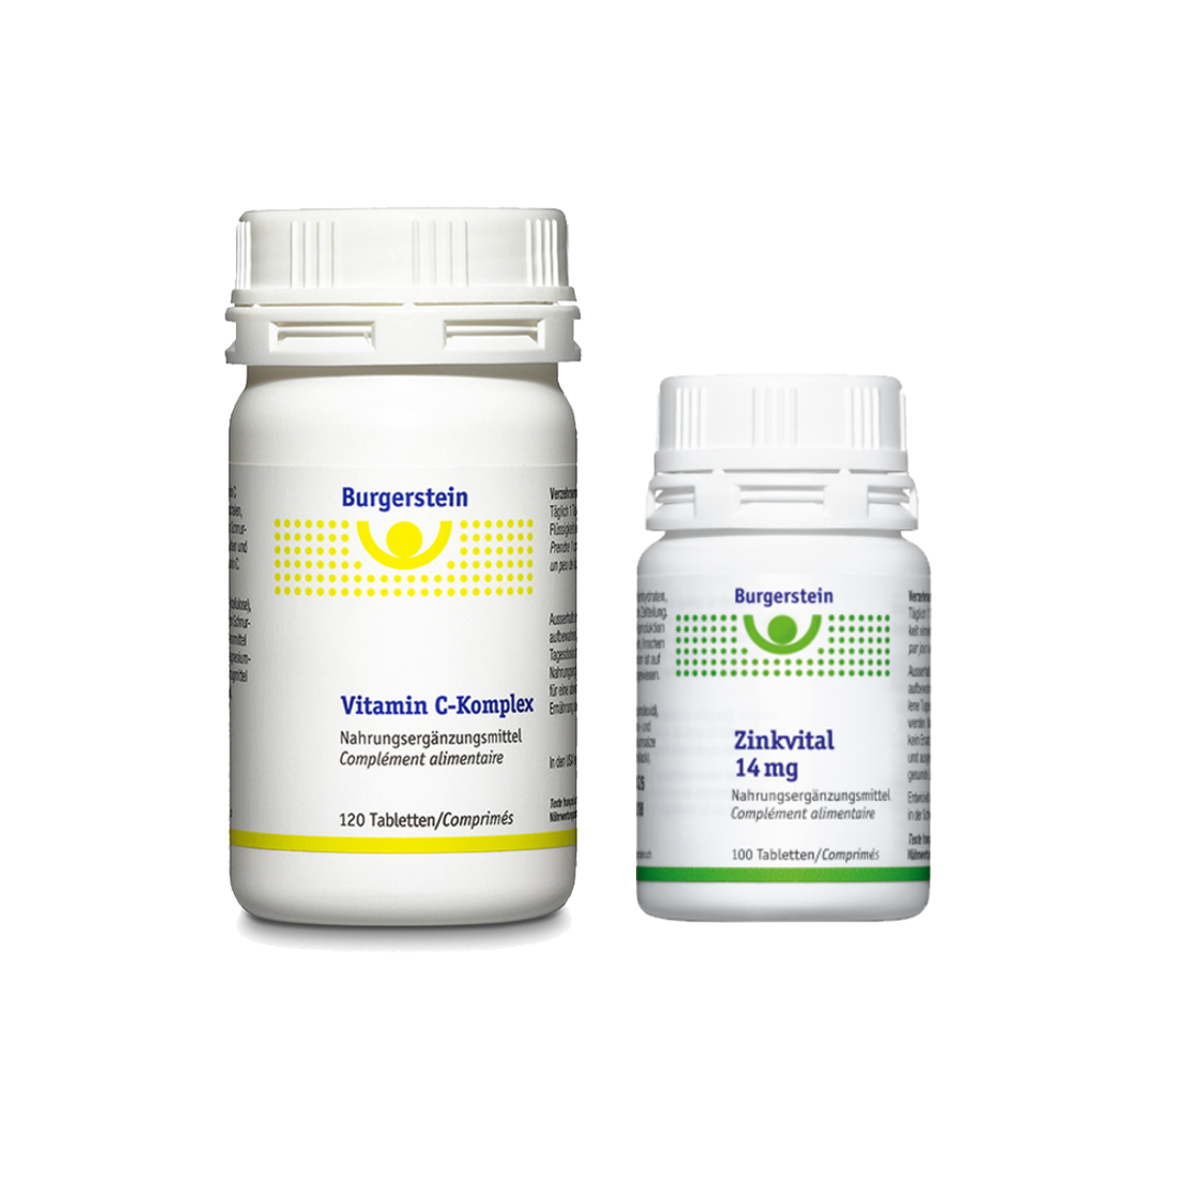 Burgerstein Vitamin C Komplex und Zinkvital für das Immunsystem